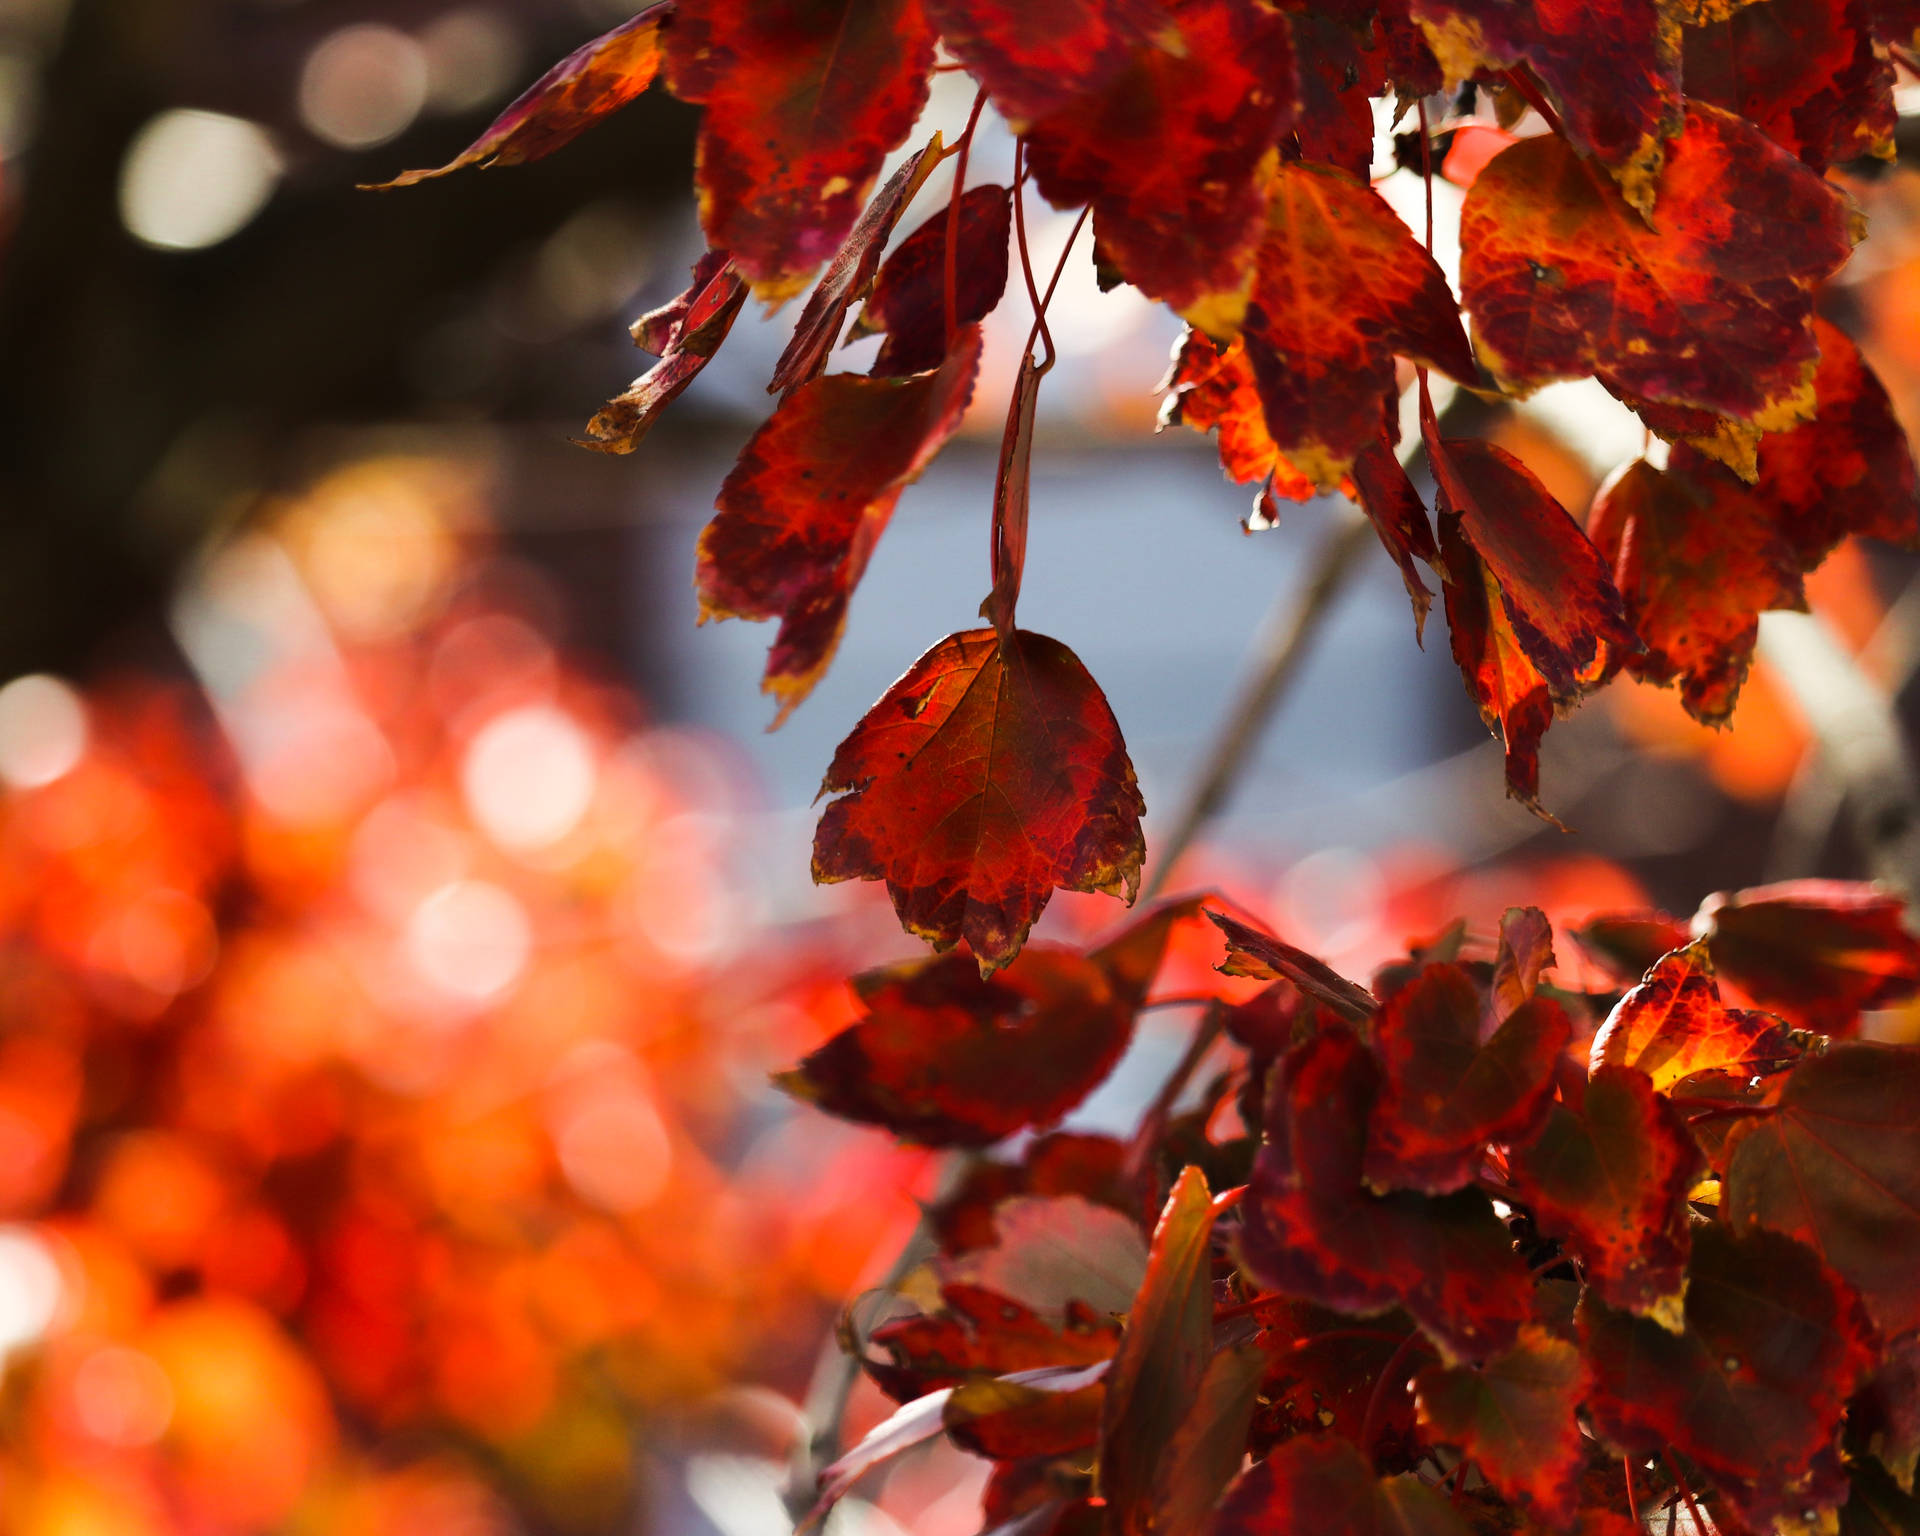 Celebrating the start of fall with vibrant November leaves. Wallpaper